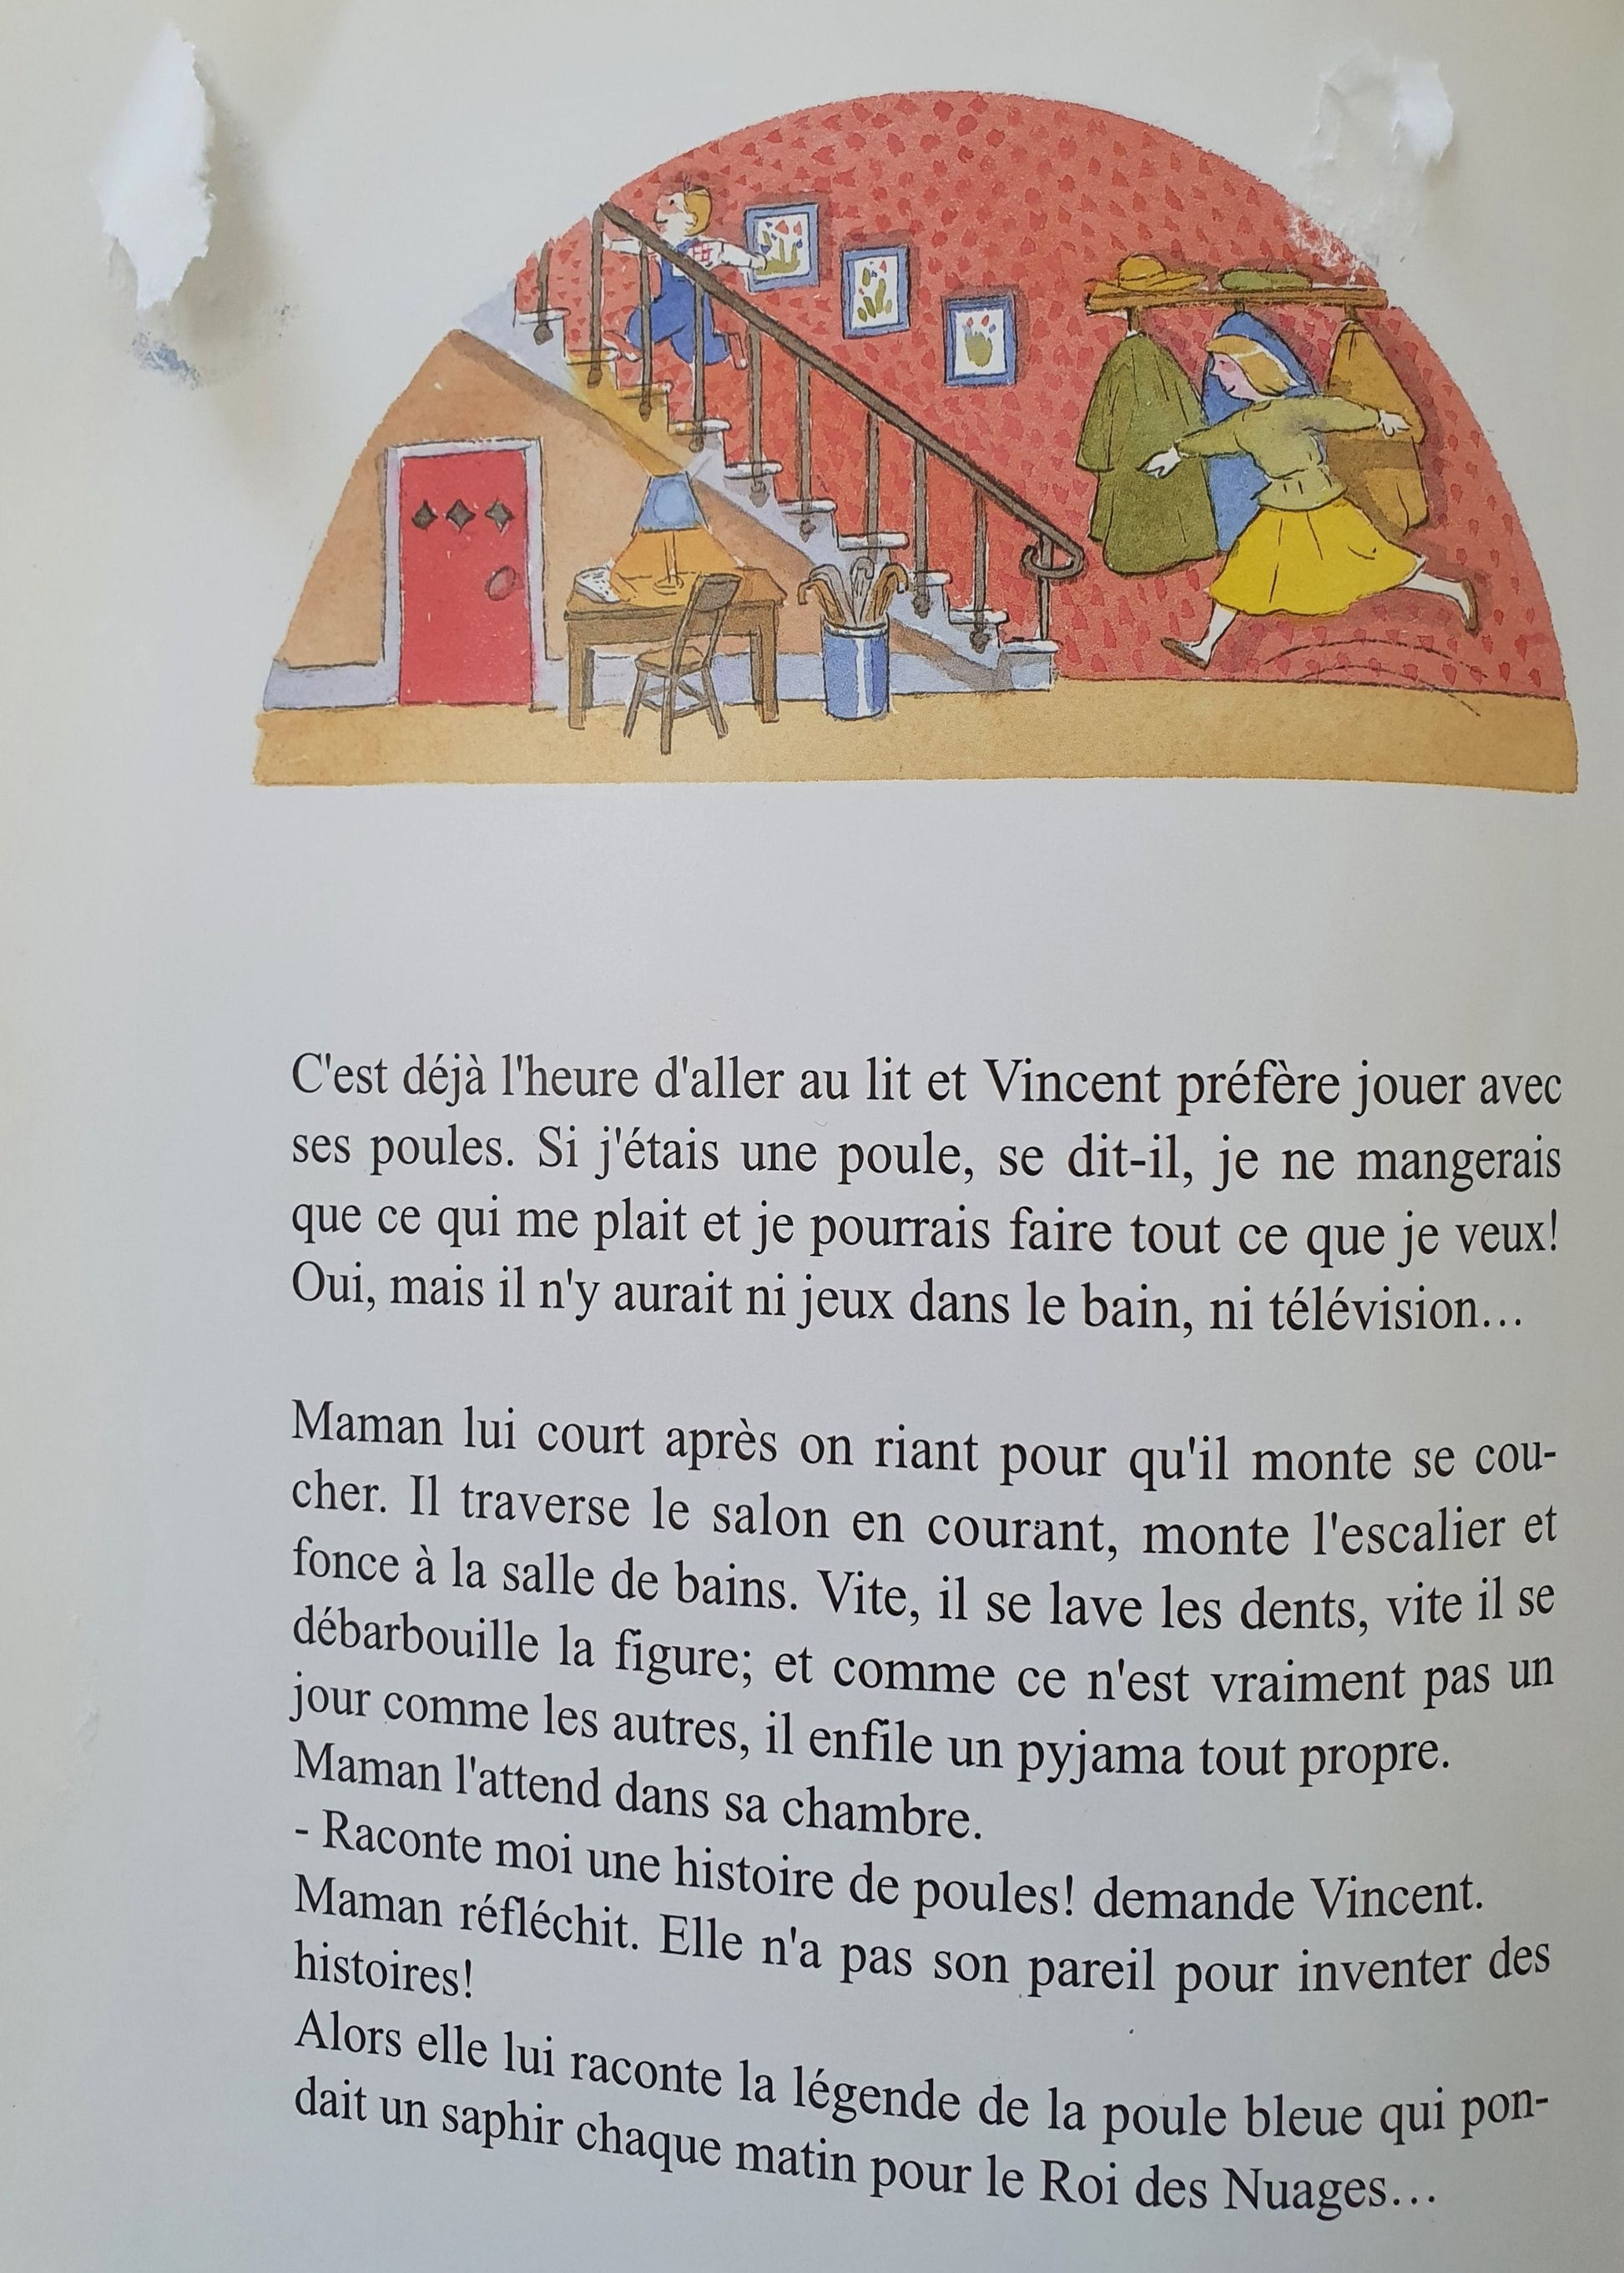 Les Poules De Vincent Histoires a lire Very Good Not Applicable  (4597648785463)